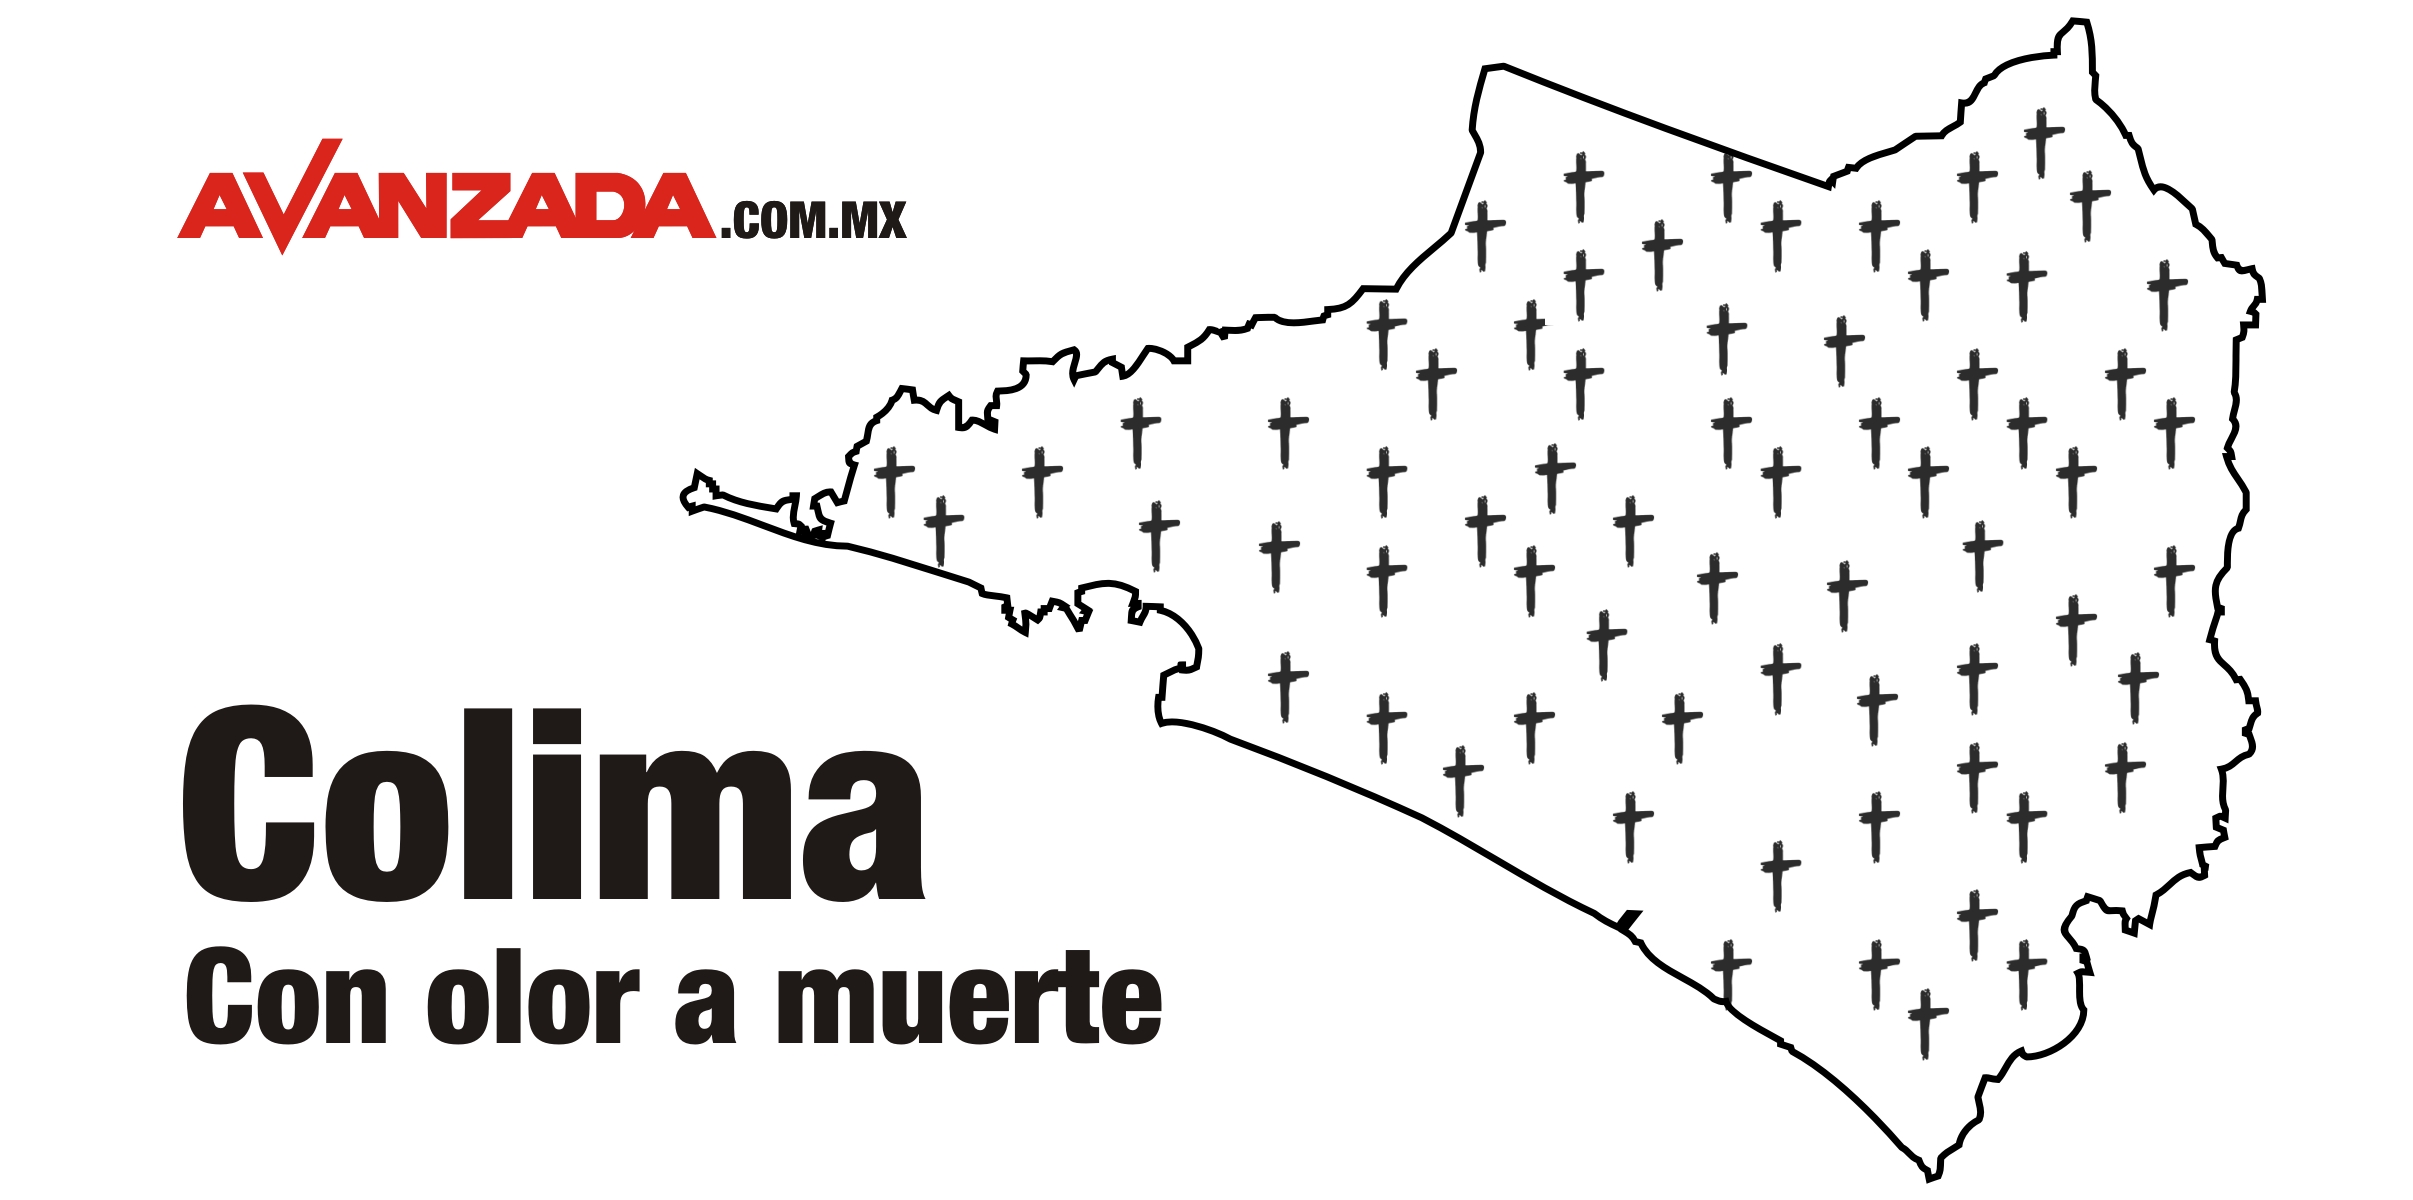 Asesinaron a 69 personas en Colima en el mes de noviembre